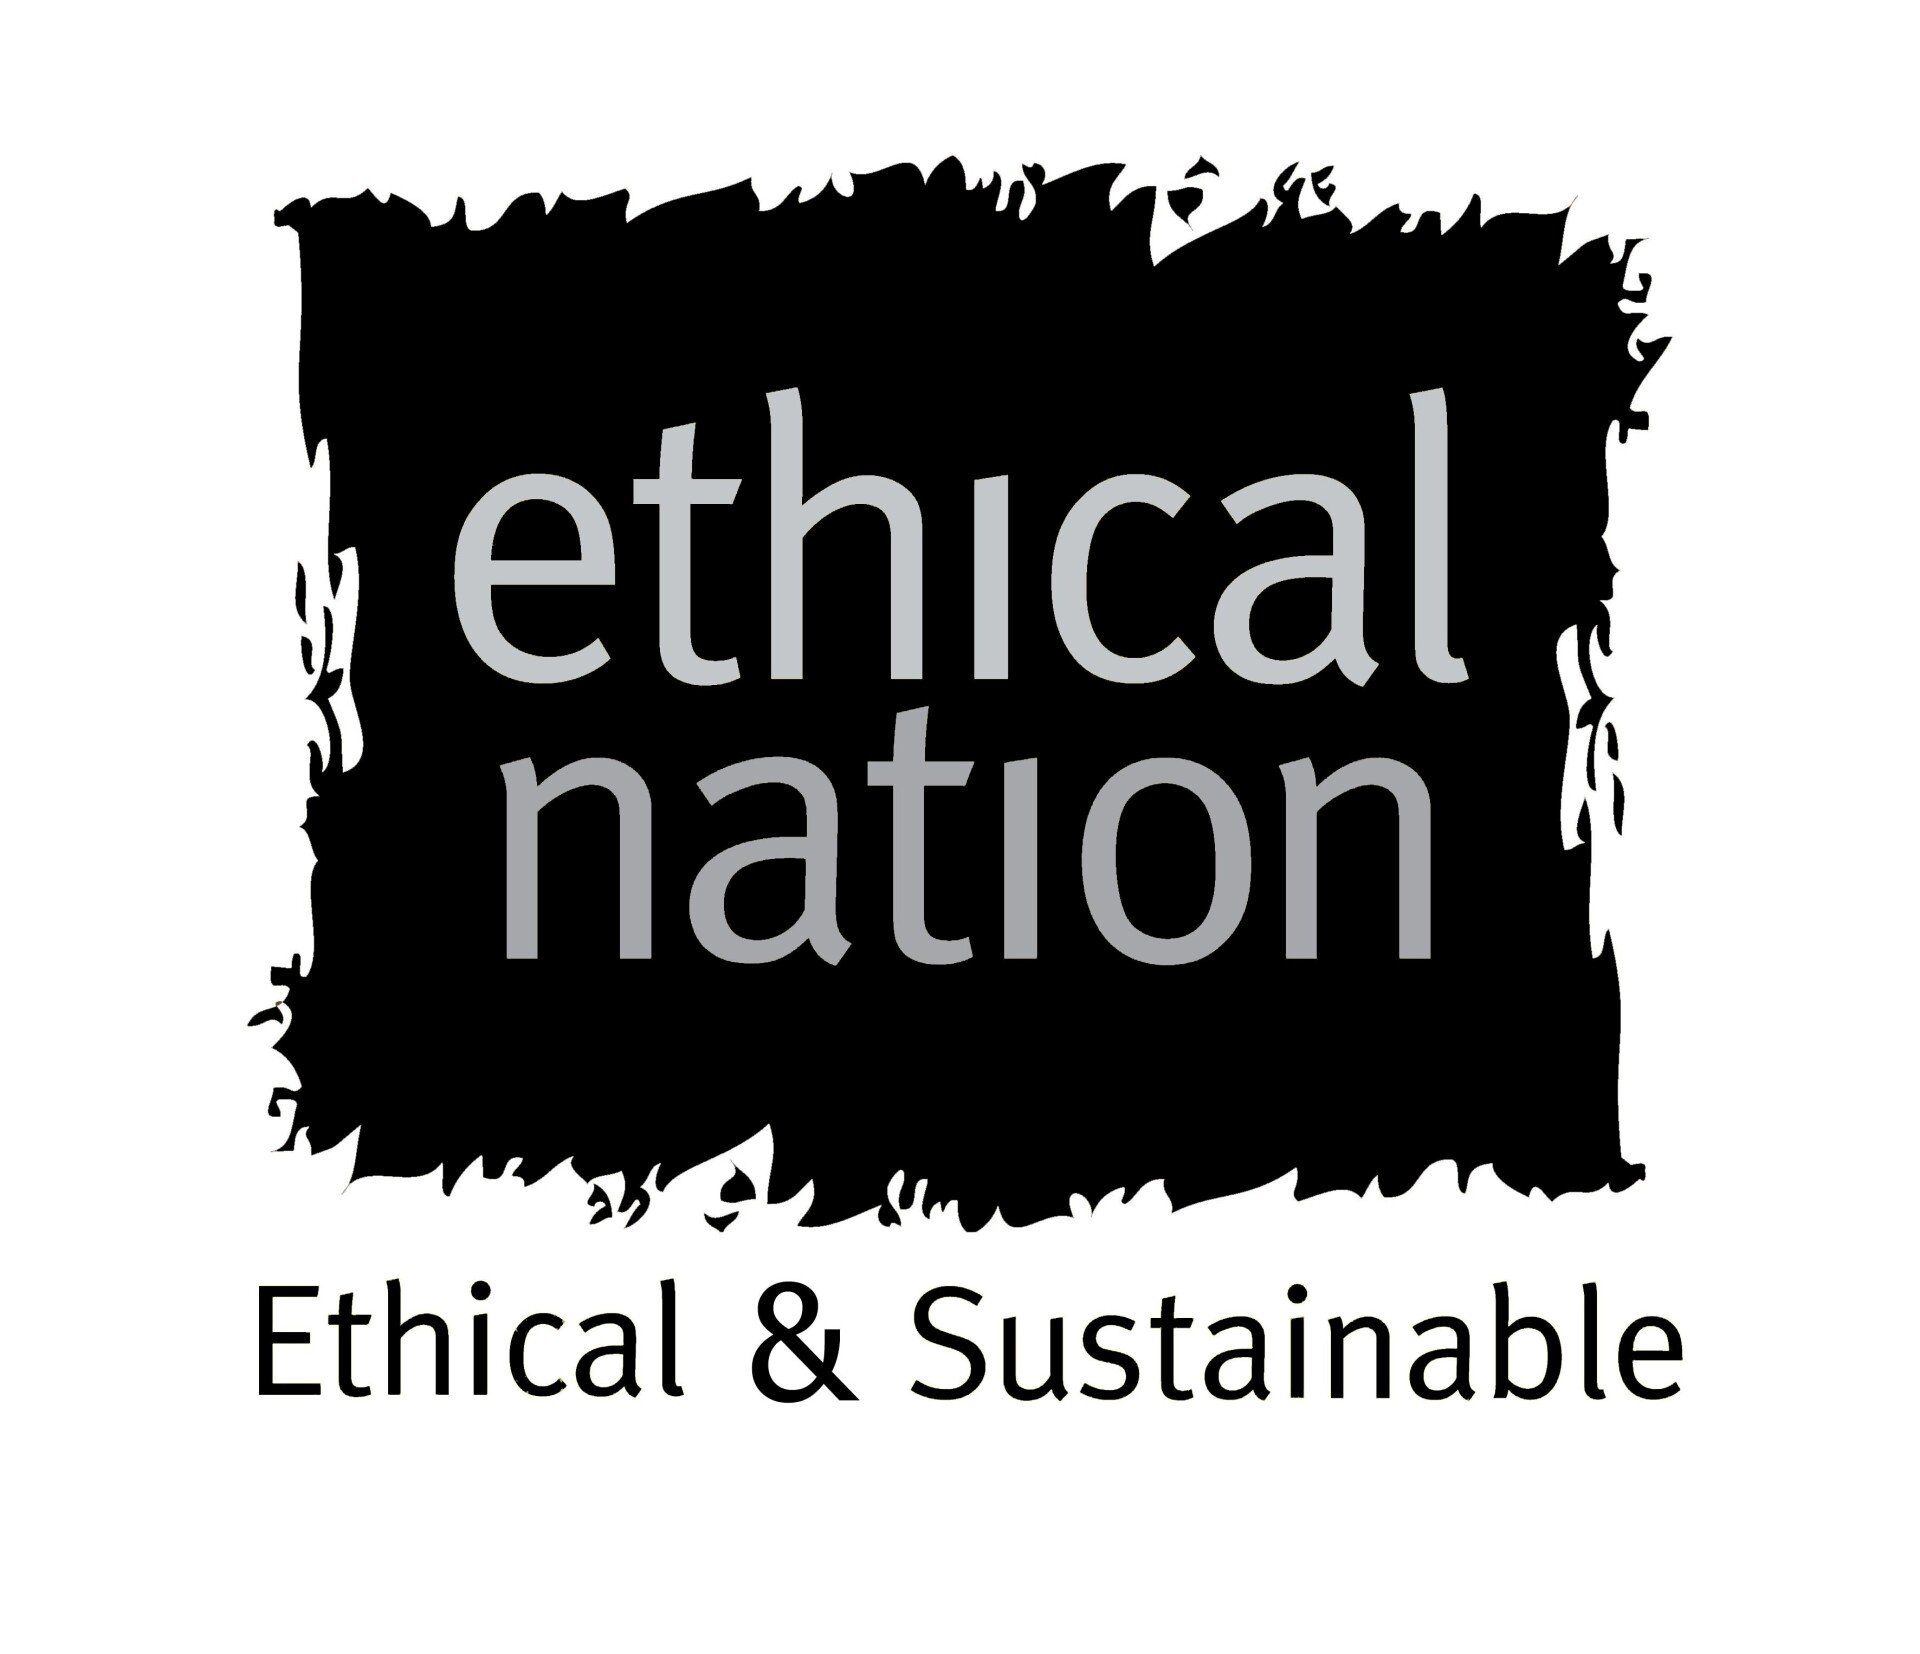 (c) Ethical-nation.co.uk